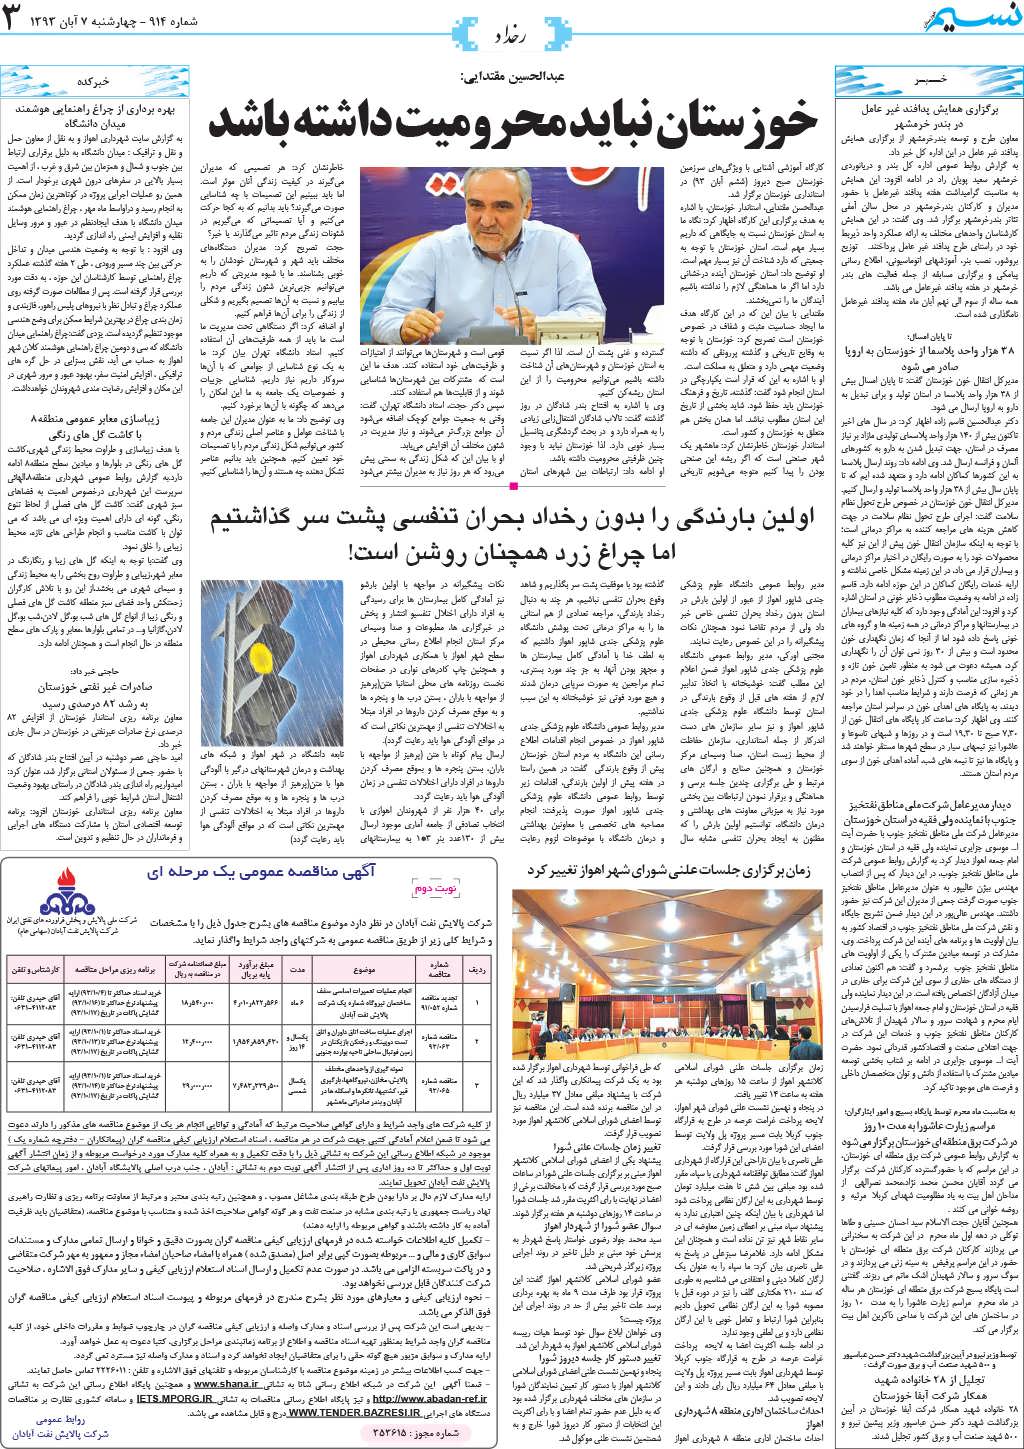 صفحه رخداد روزنامه نسیم شماره 914